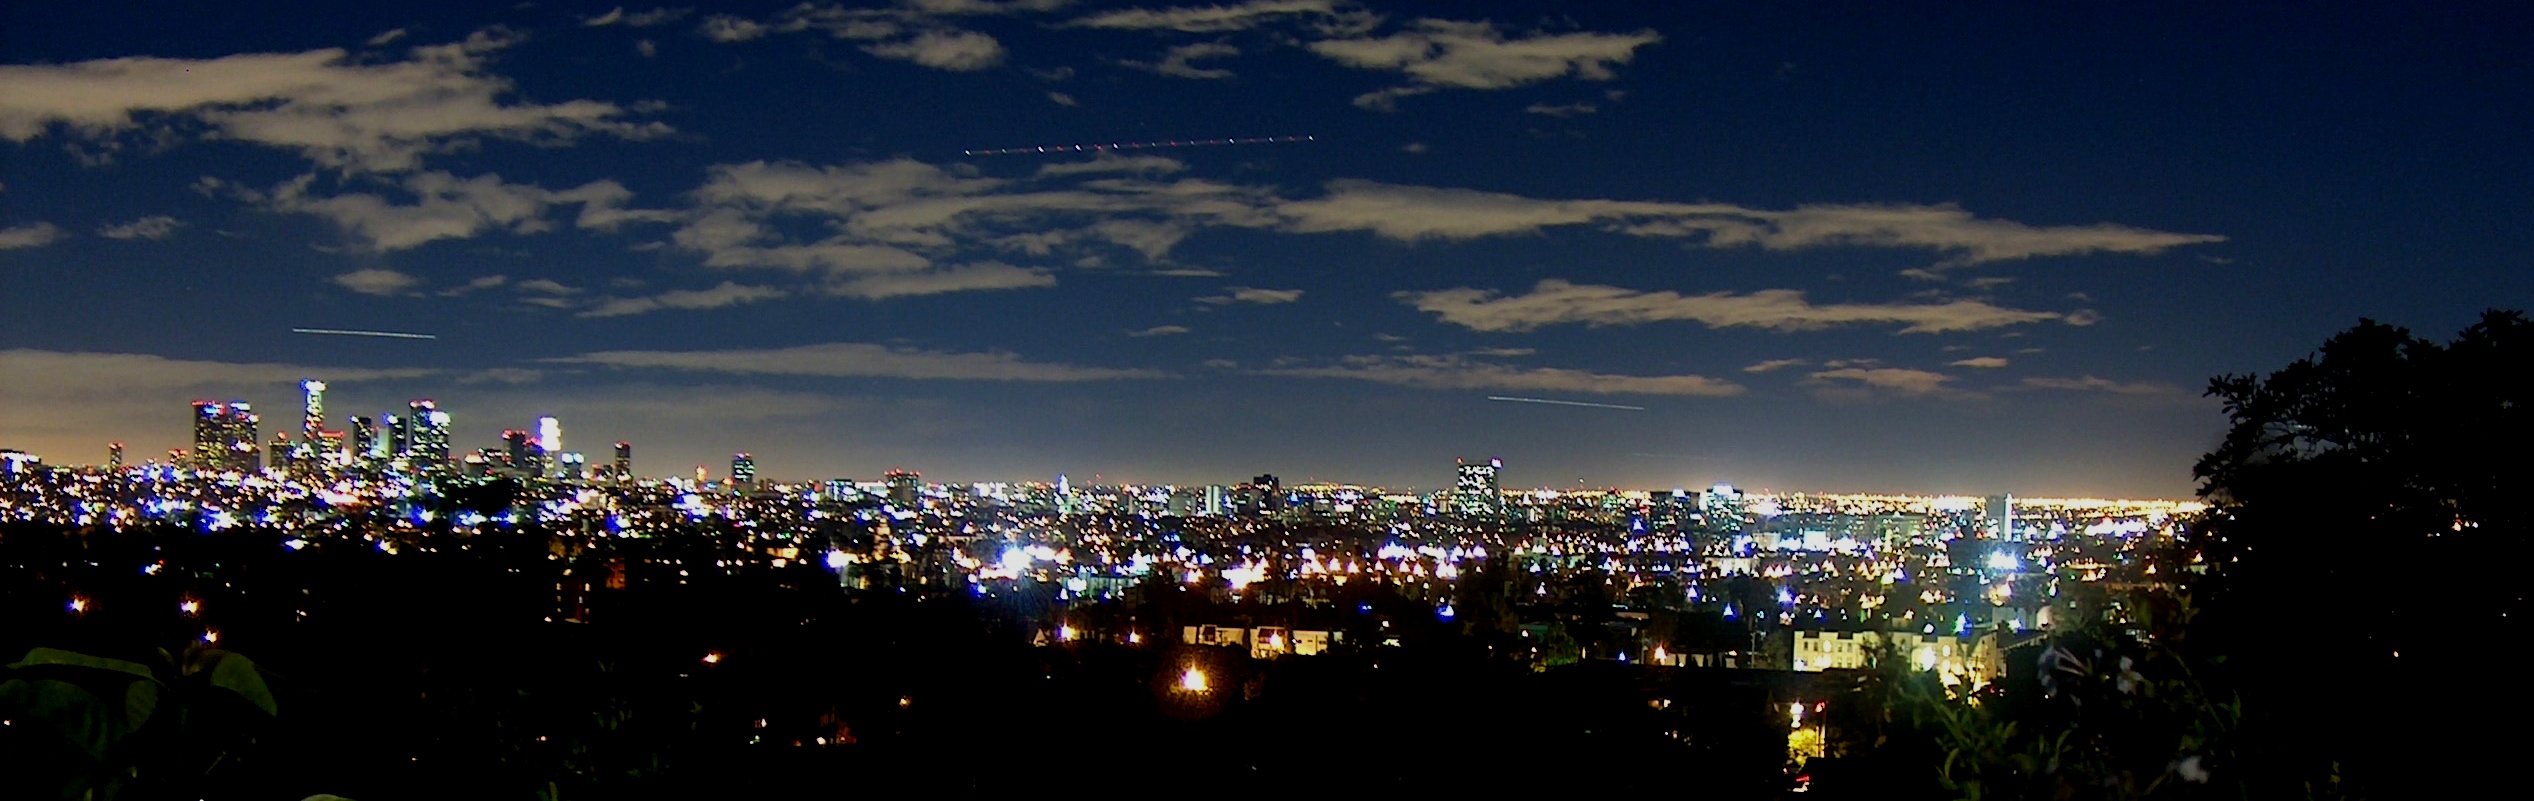 Los Angeles night skyline from www.sxc.hu